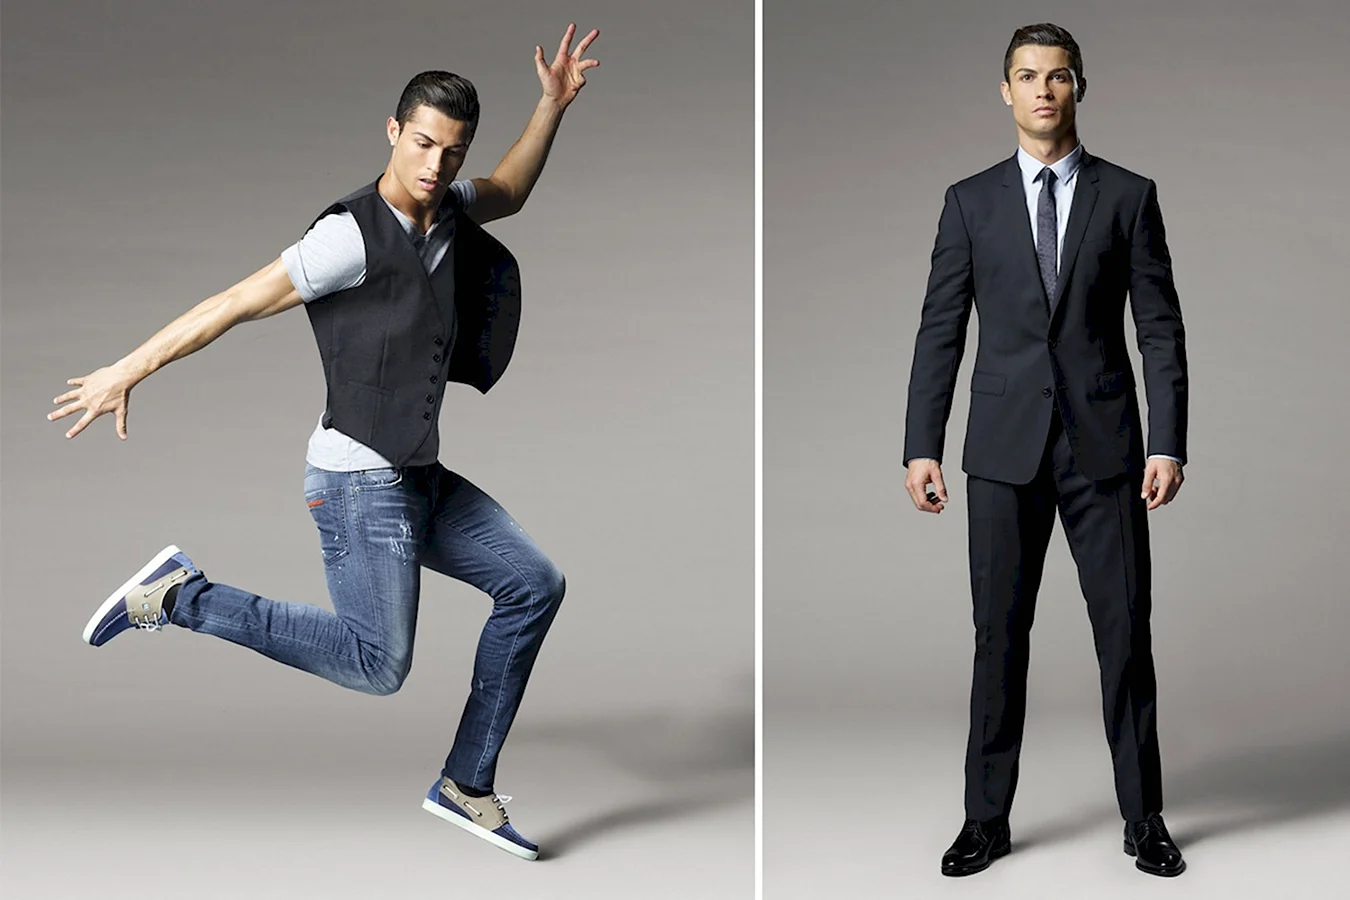 Cr7 Cristiano Ronaldo одежда